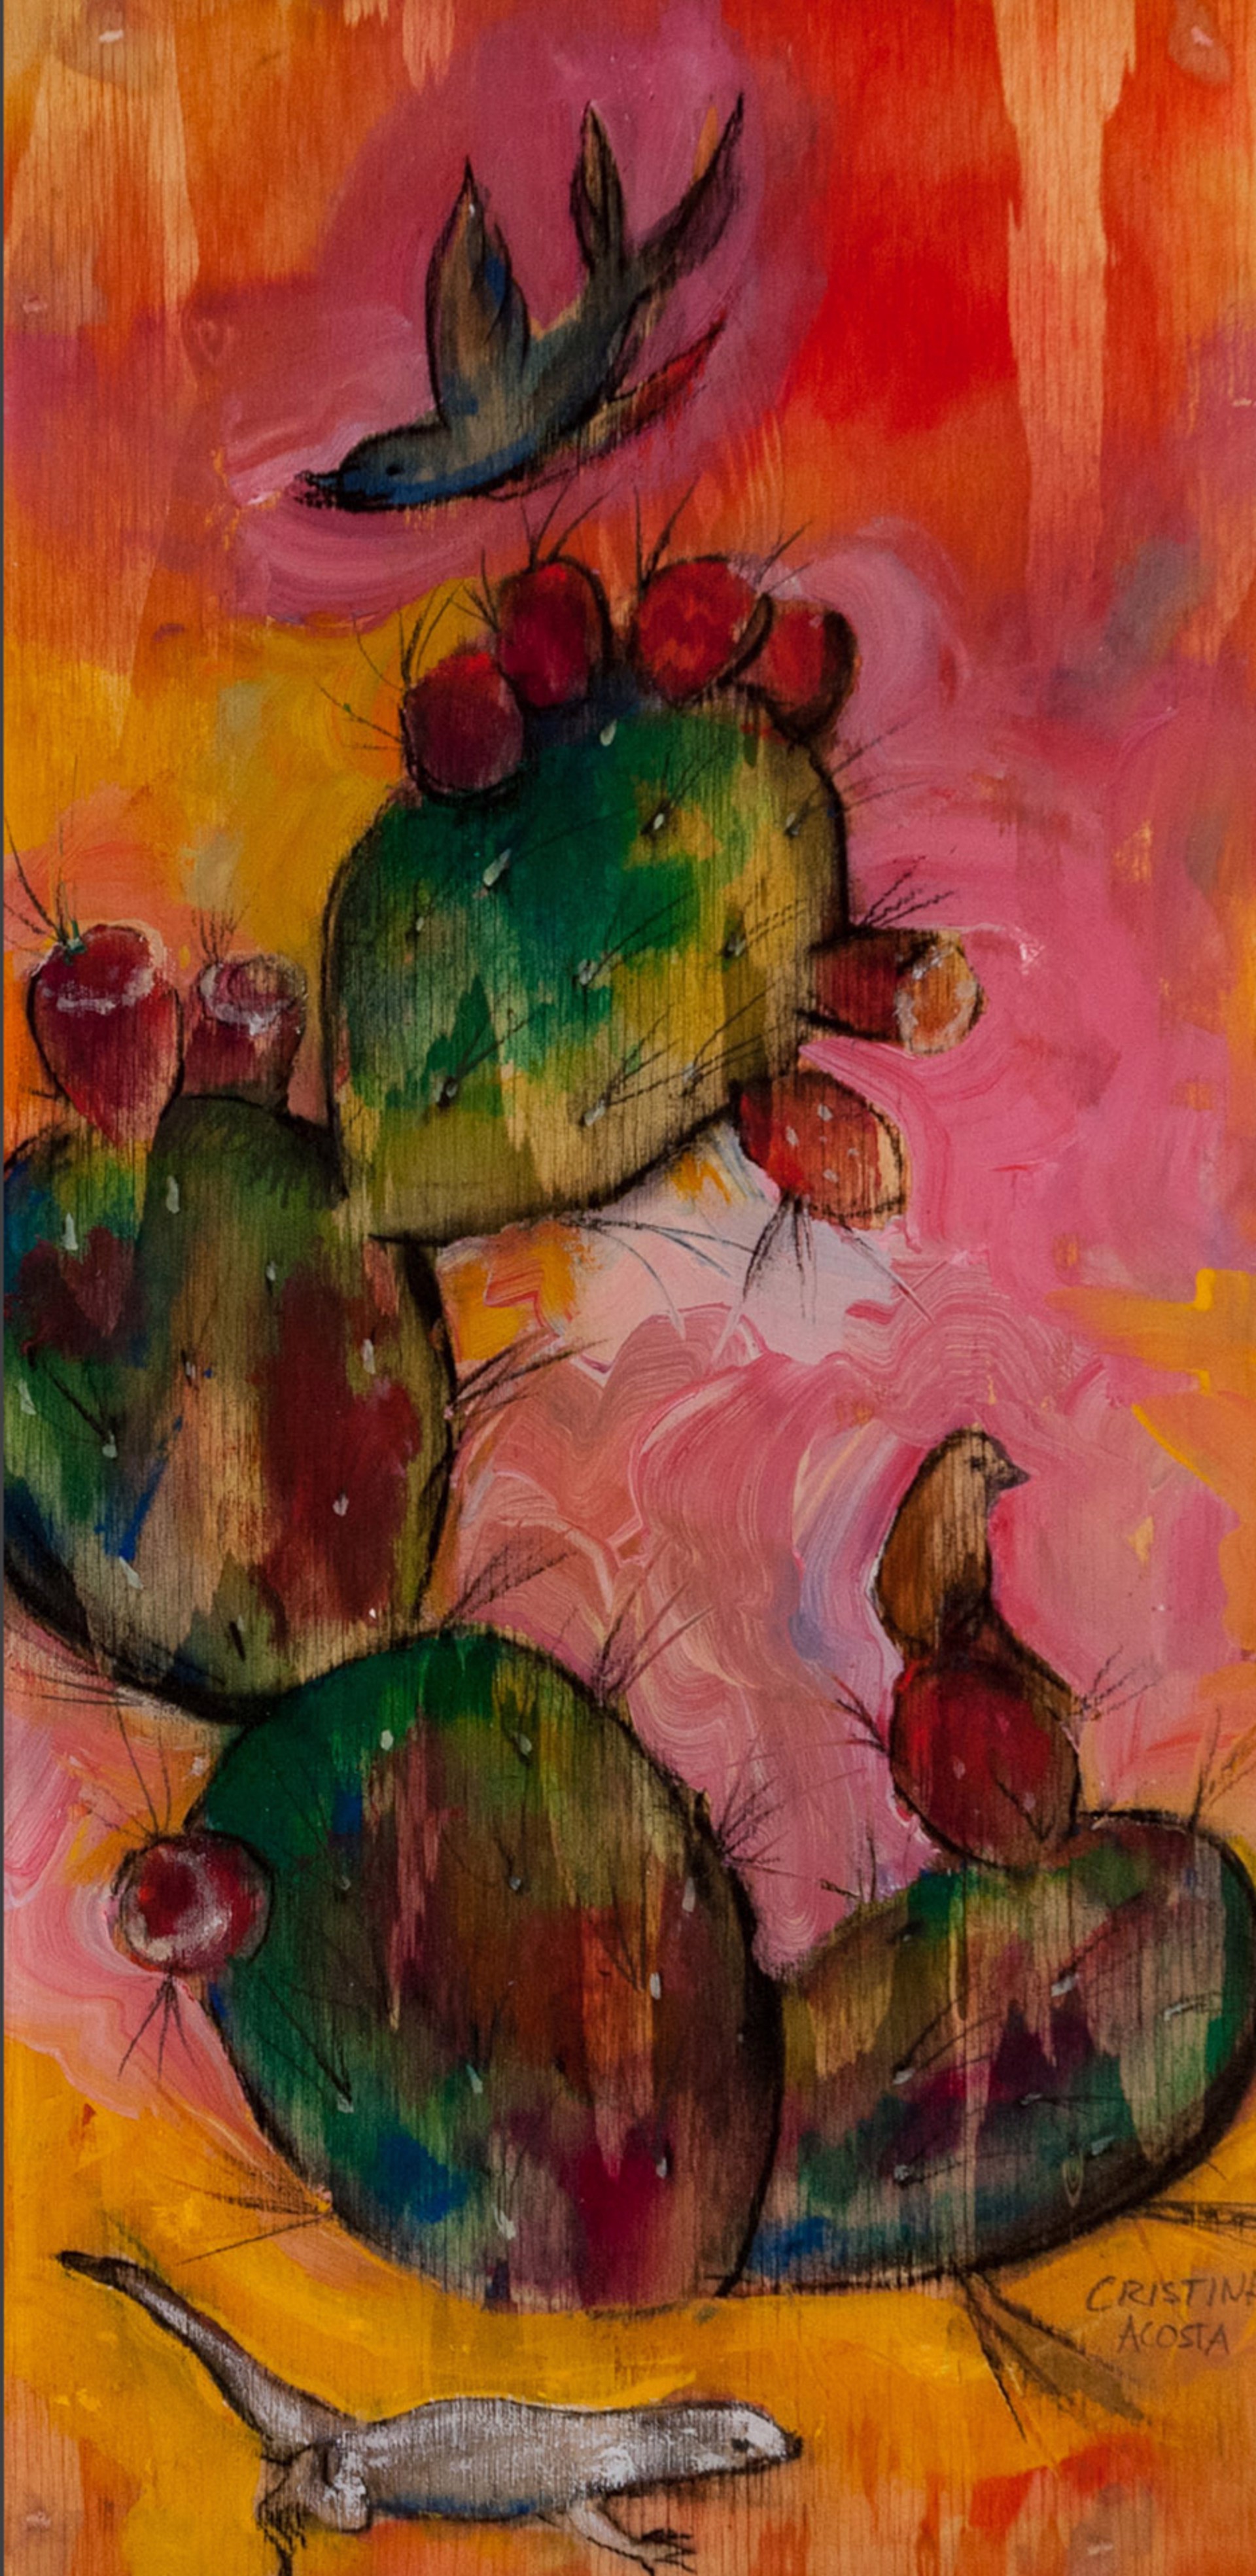 Fringe Toe Lizard with Paddle Cactus by Cristina Acosta